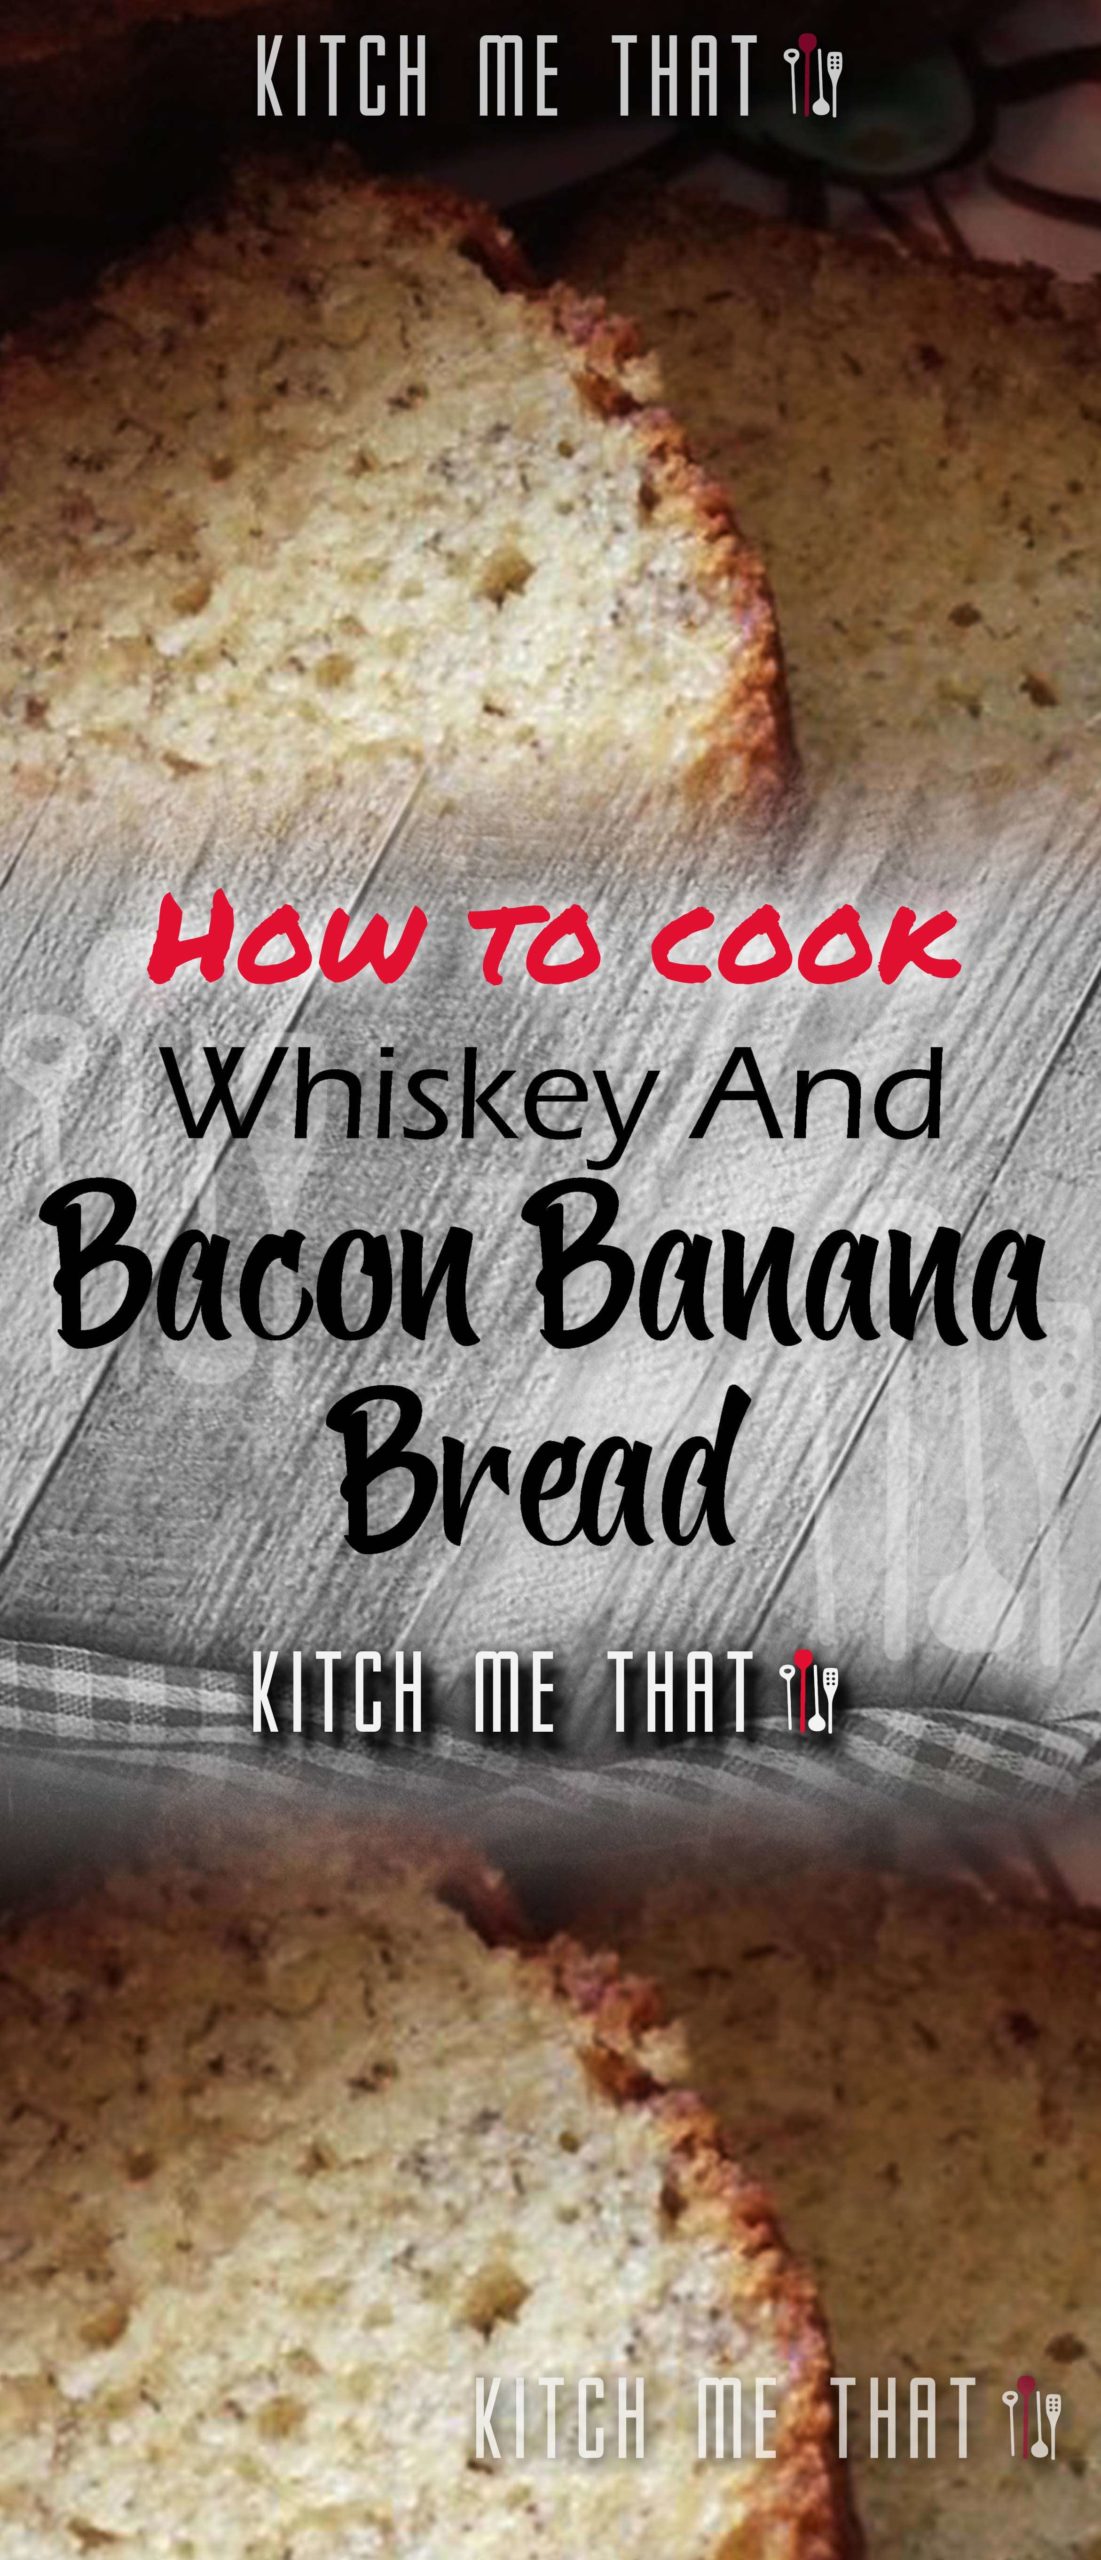 Whiskey And Bacon Banana Bread